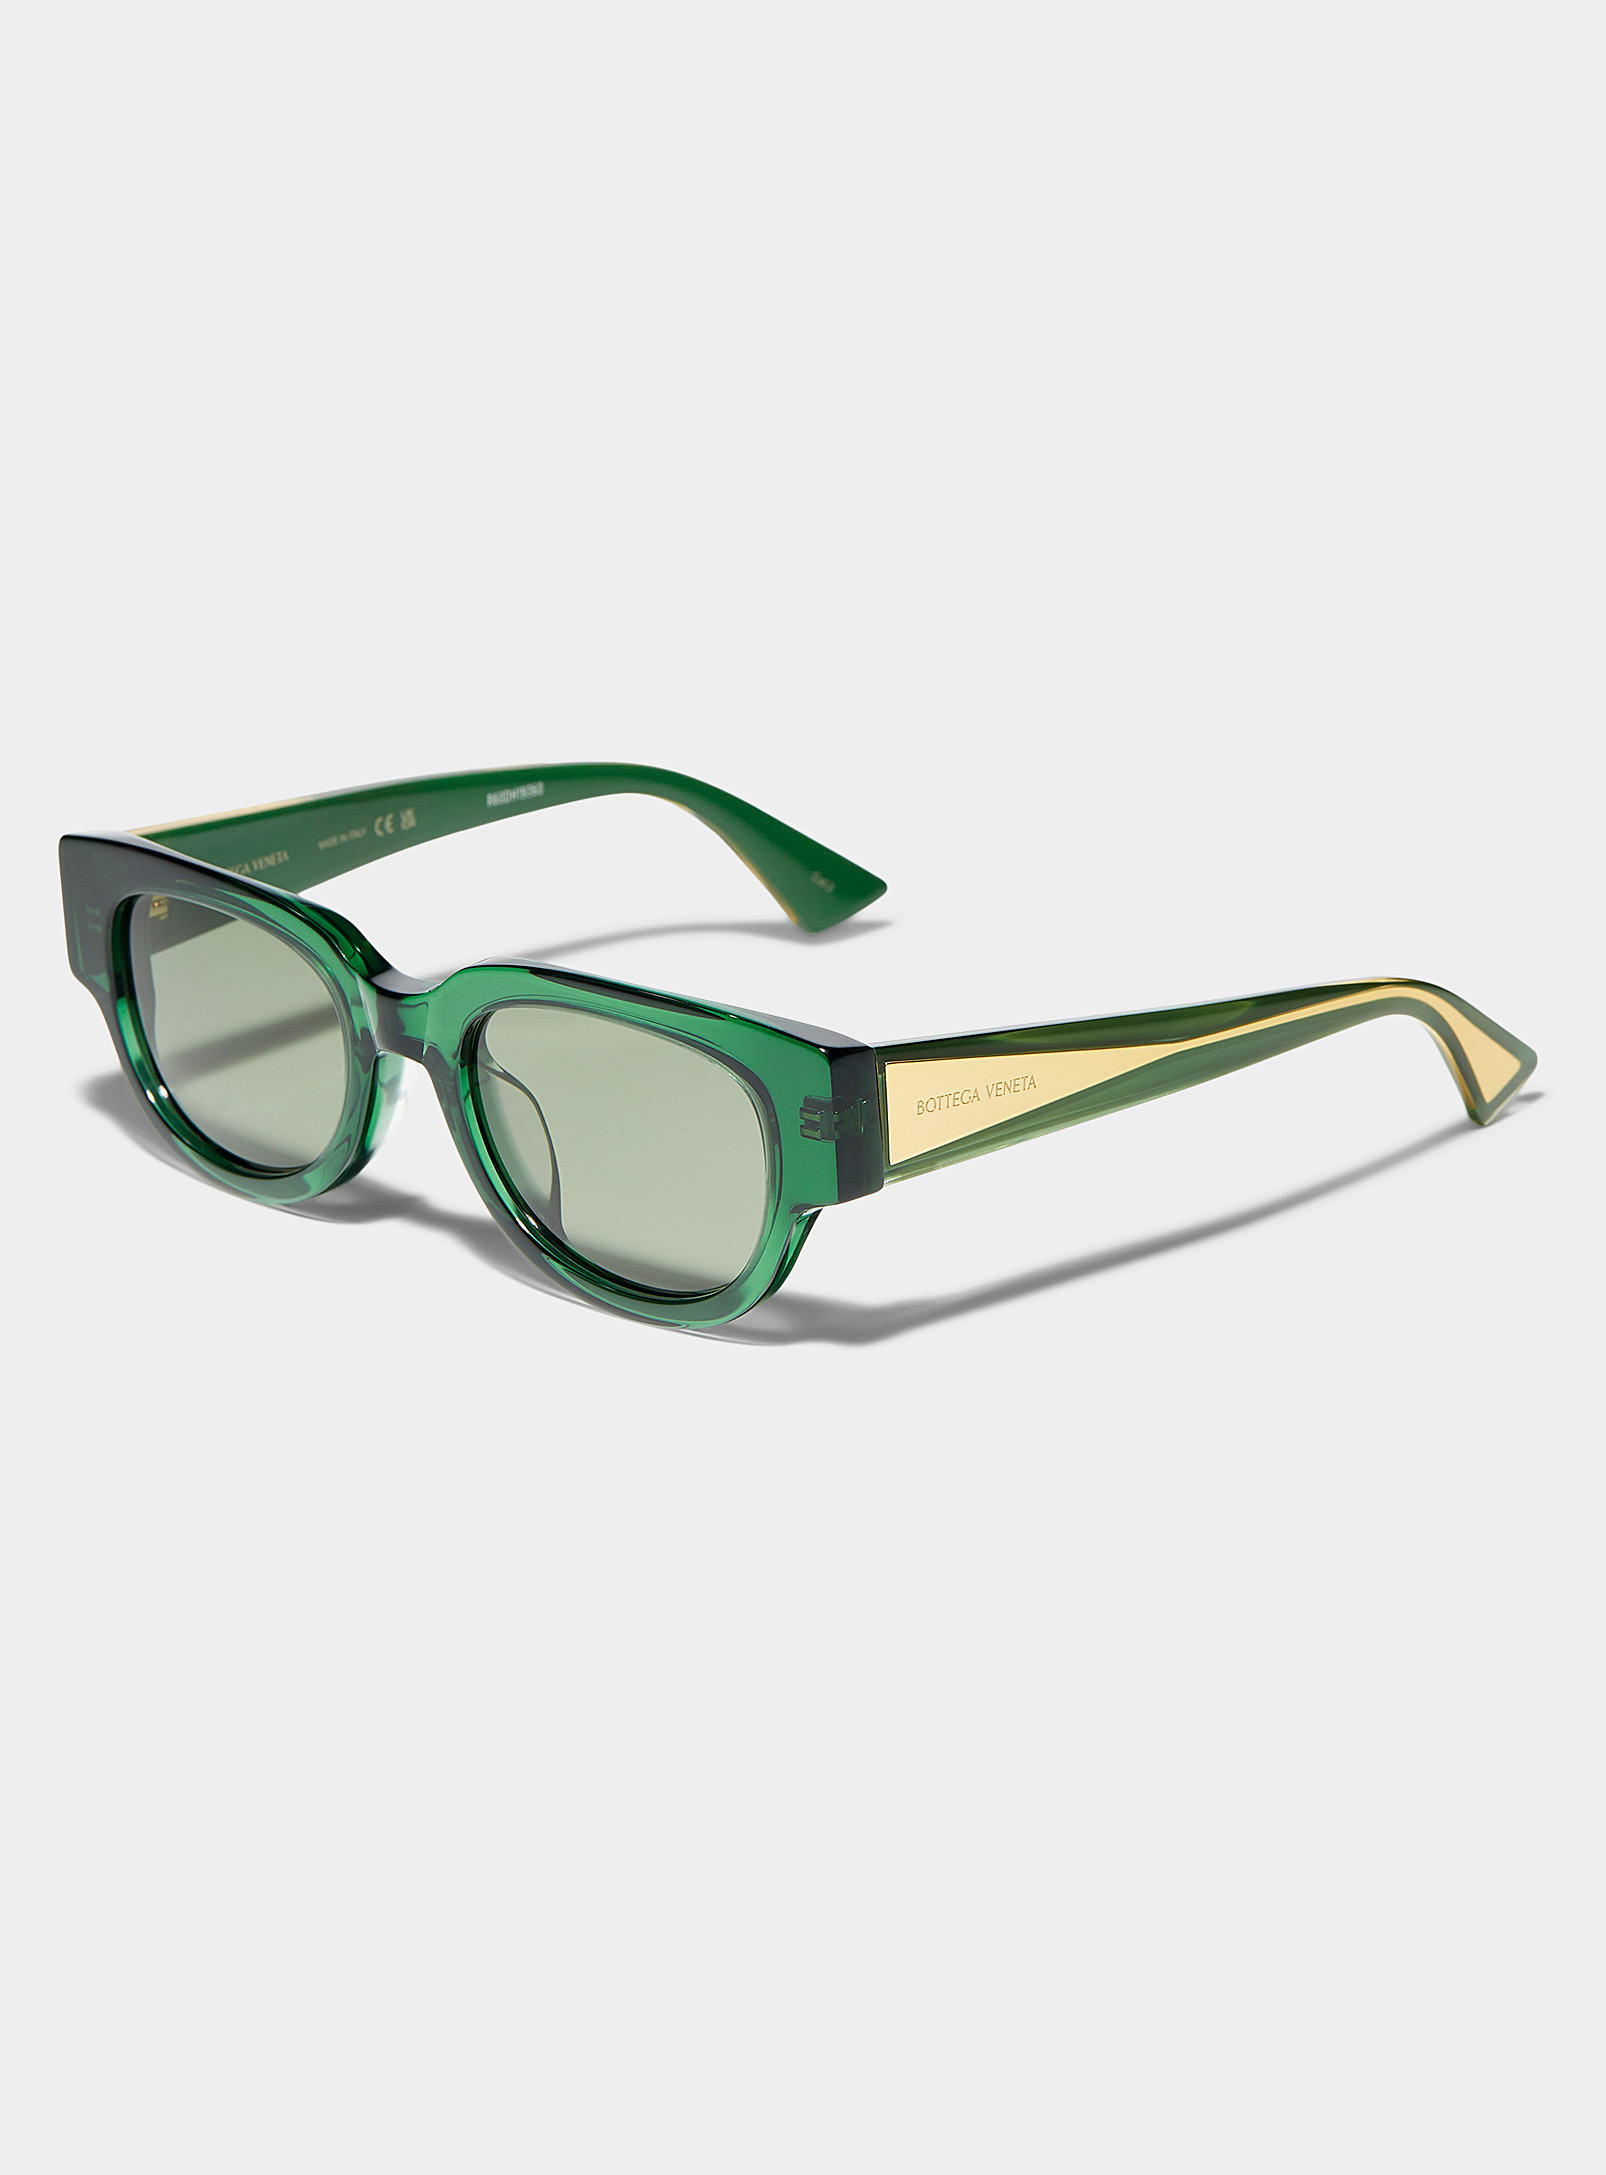 Bottega Veneta - Les lunettes de soleil carrées vertes